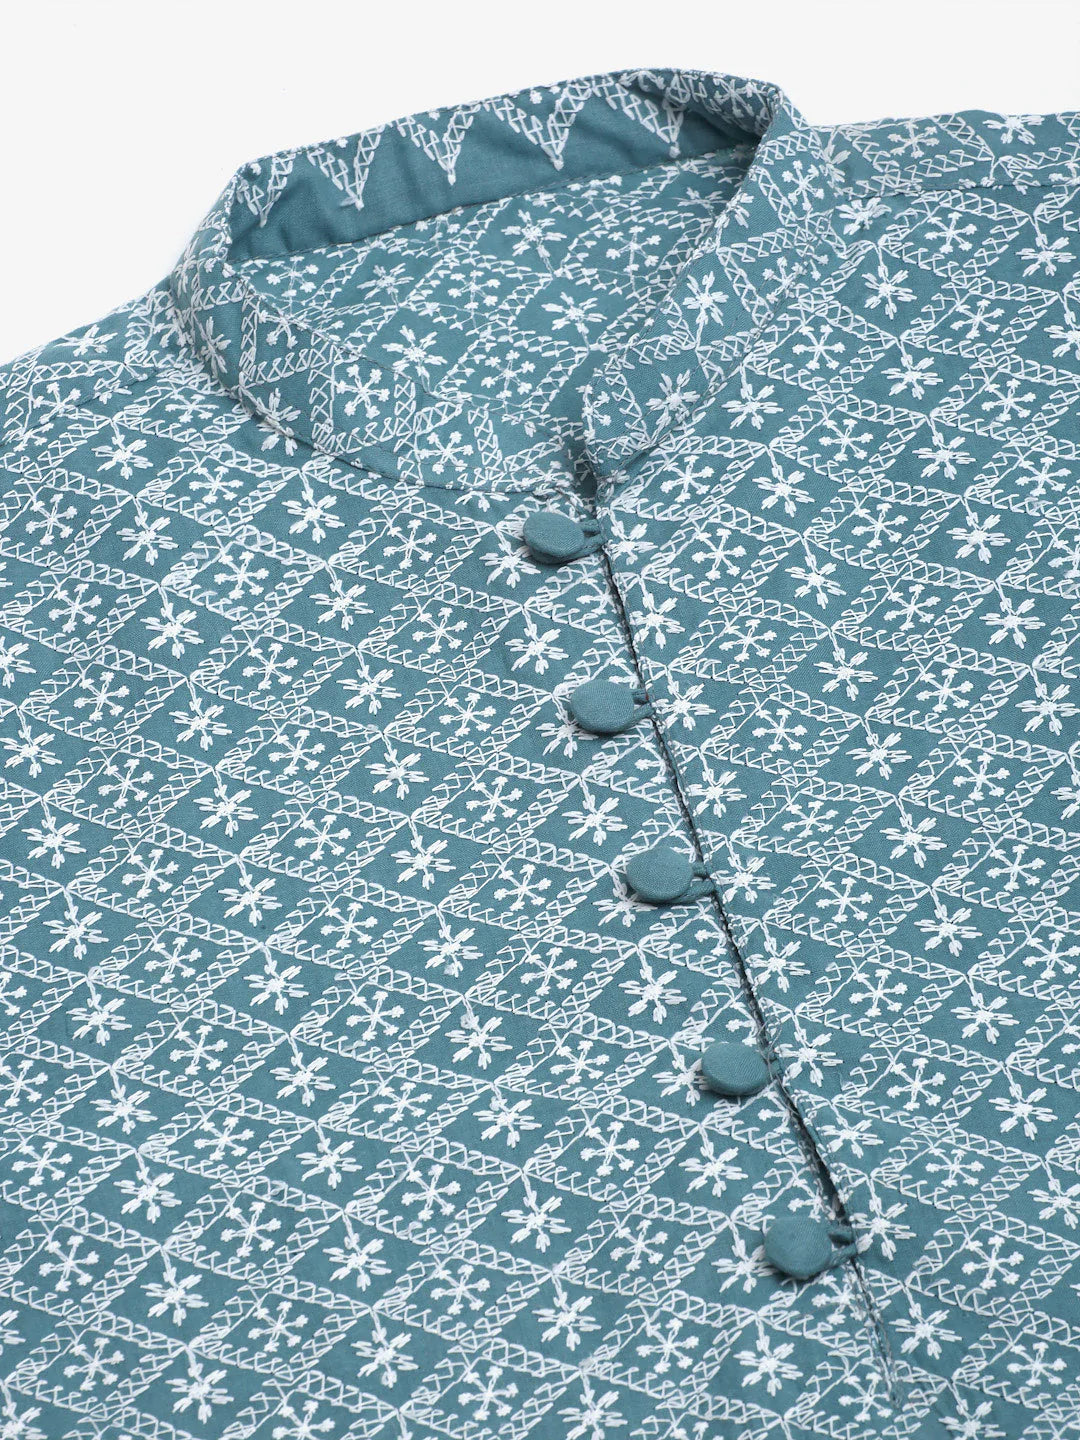 Men's Teal Blue & White embroidered Straight Kurta Pyjama Set ( JOKP 626 Teal )